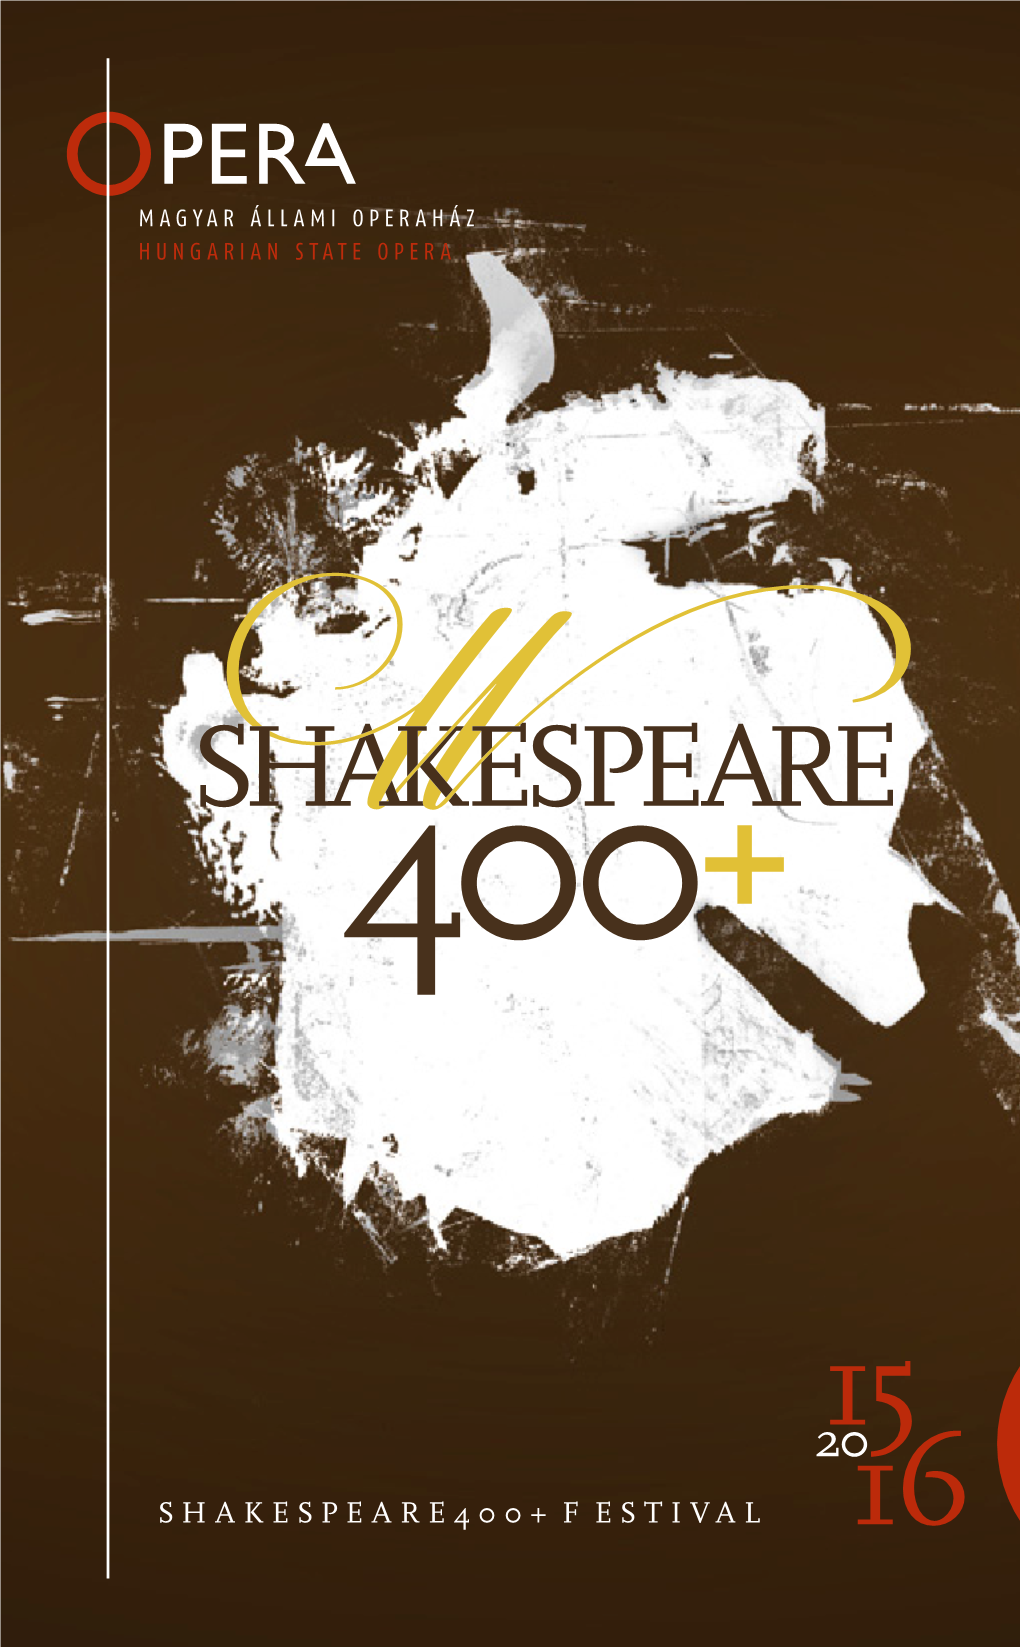 Shakespeare400+ Festival